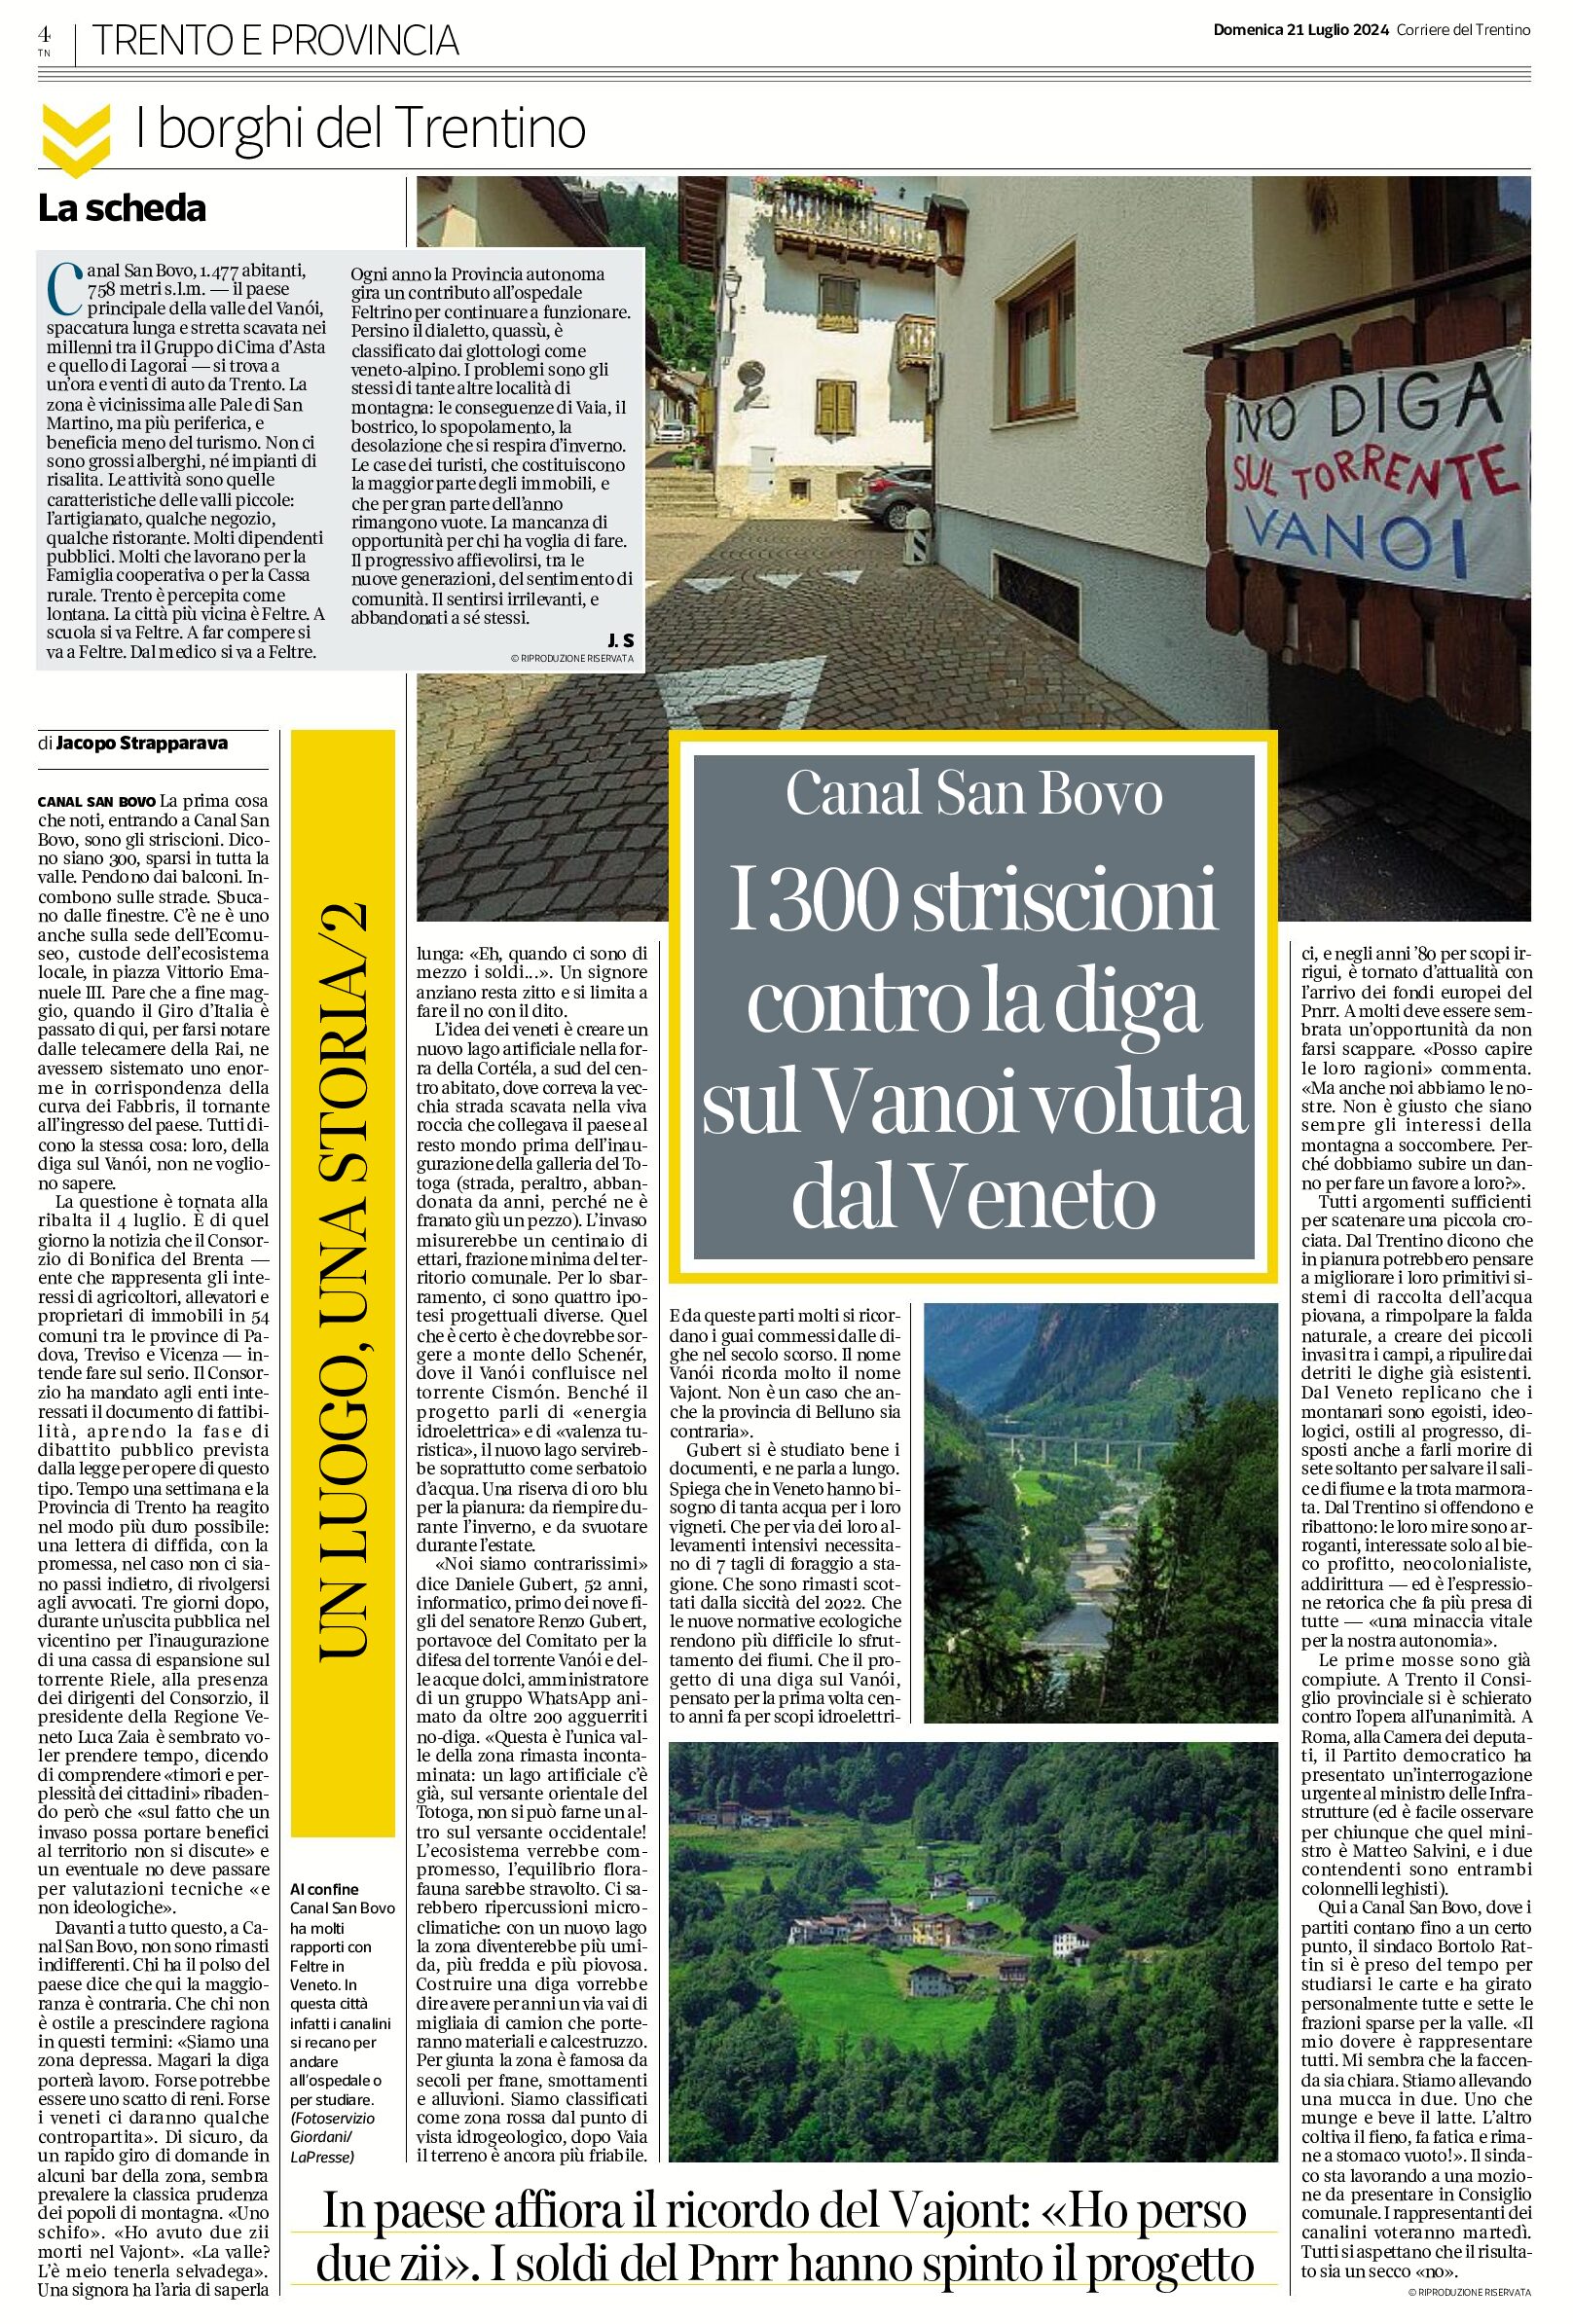 I 300 striscioni contro la diga sul Vanoi voluta dal Veneto